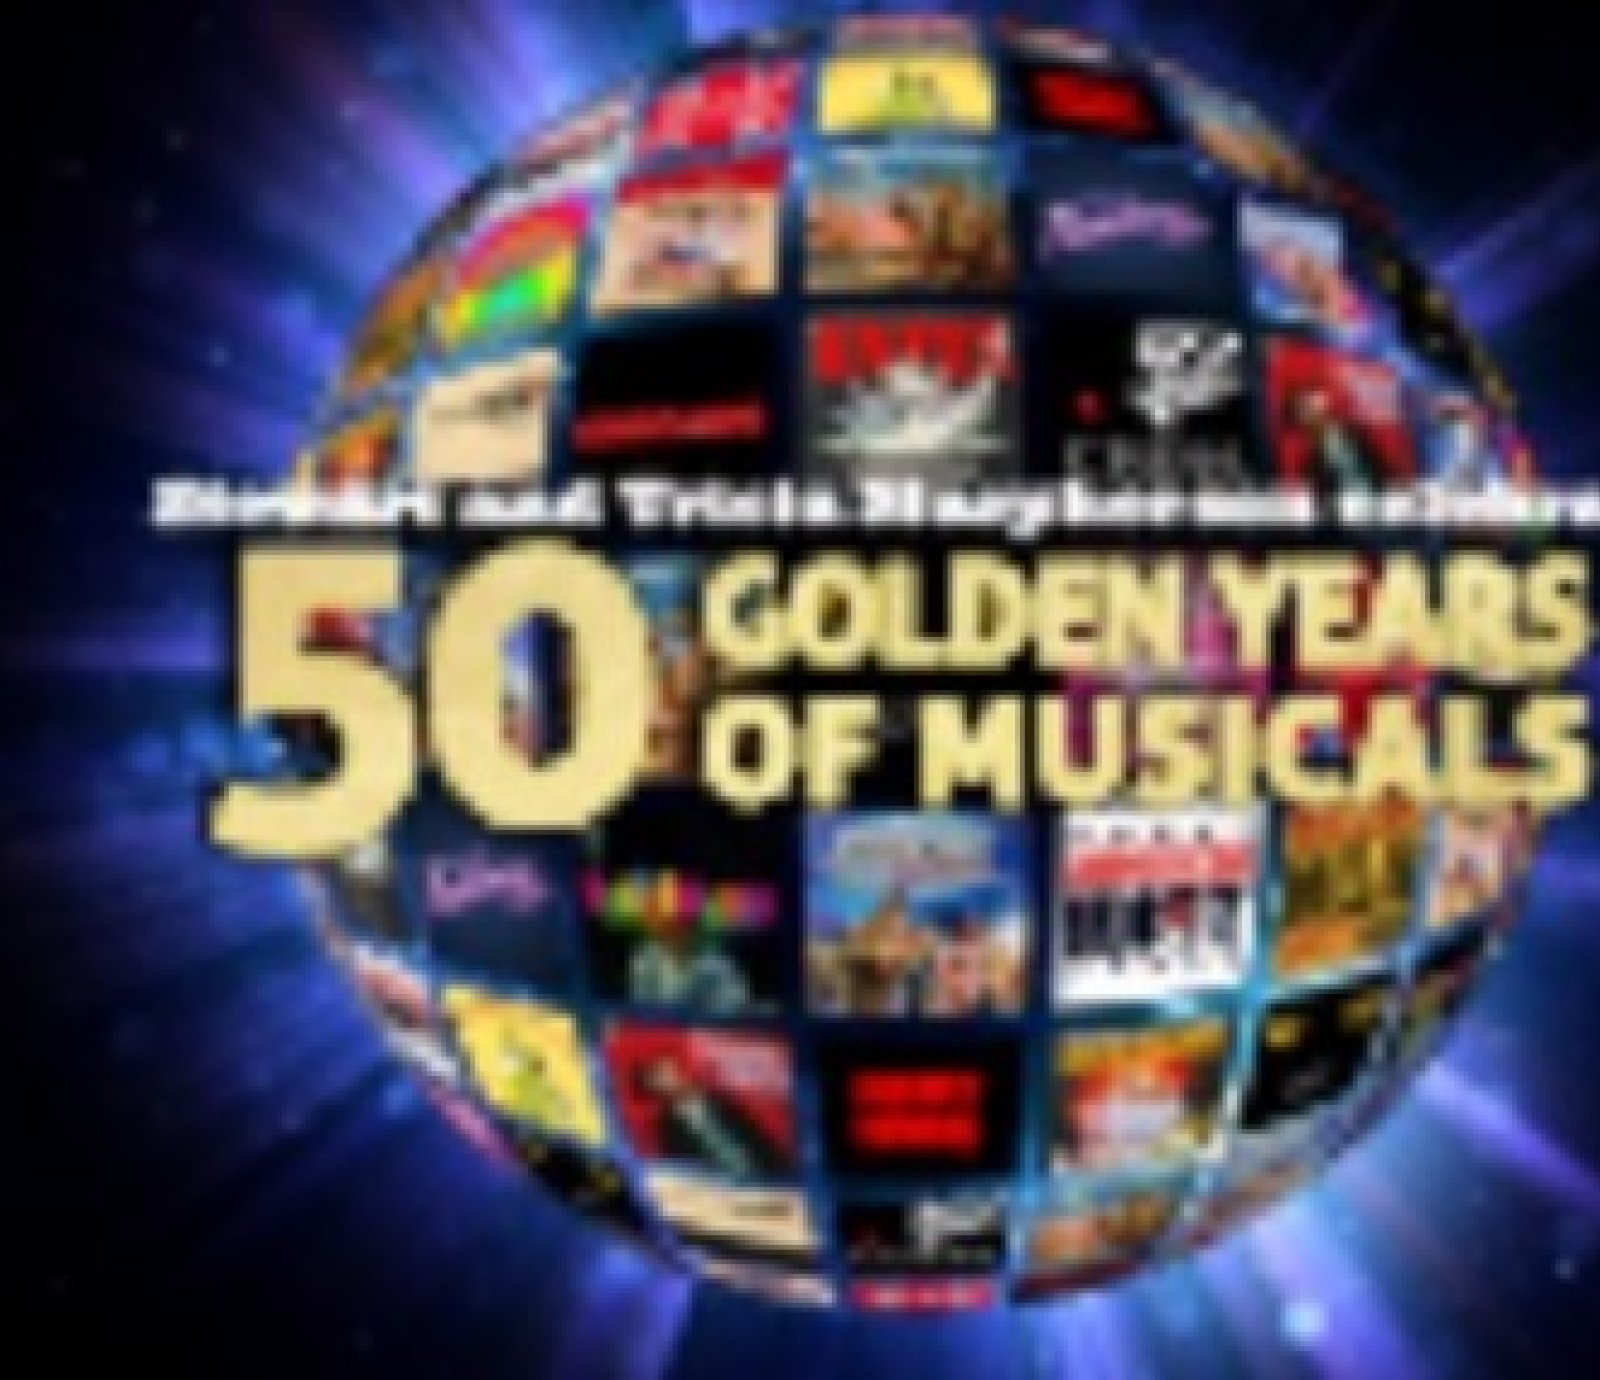 50 Golden Years of Musicals